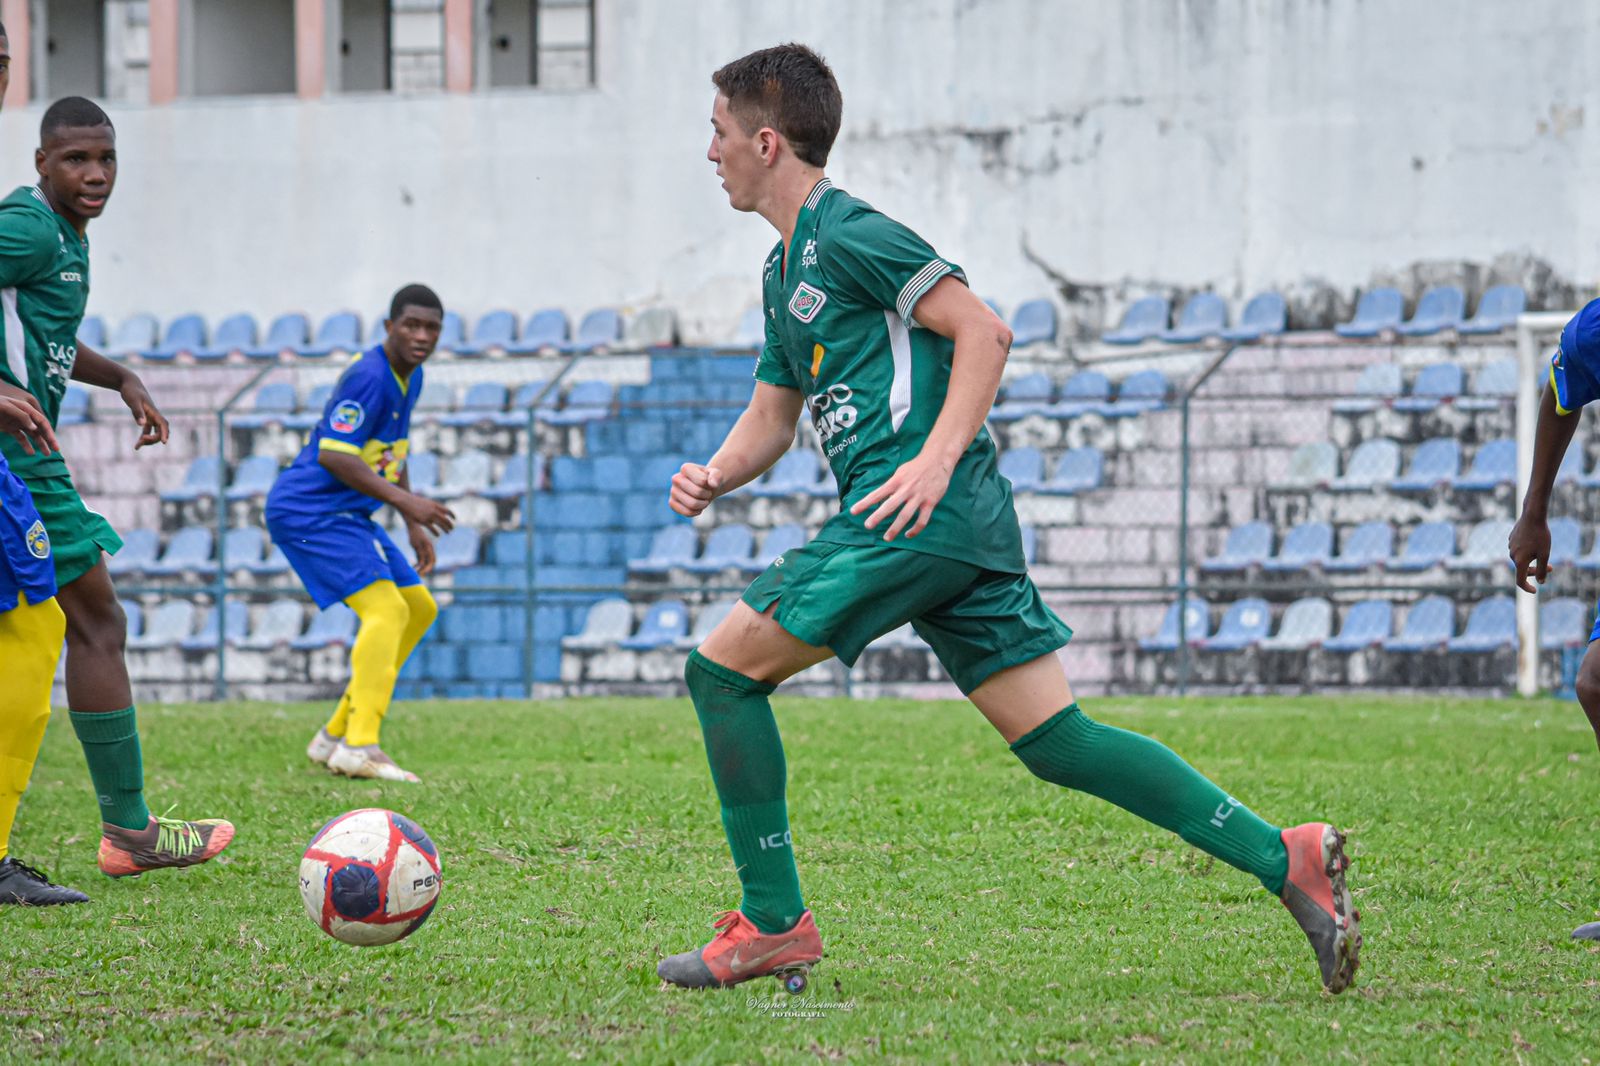 Cabofriense inicia caminhada na Série A2 do Campeonato Carioca, e Bruno Alvino foca no objetivo: ‘Fazer bons resultados e ser campeão’